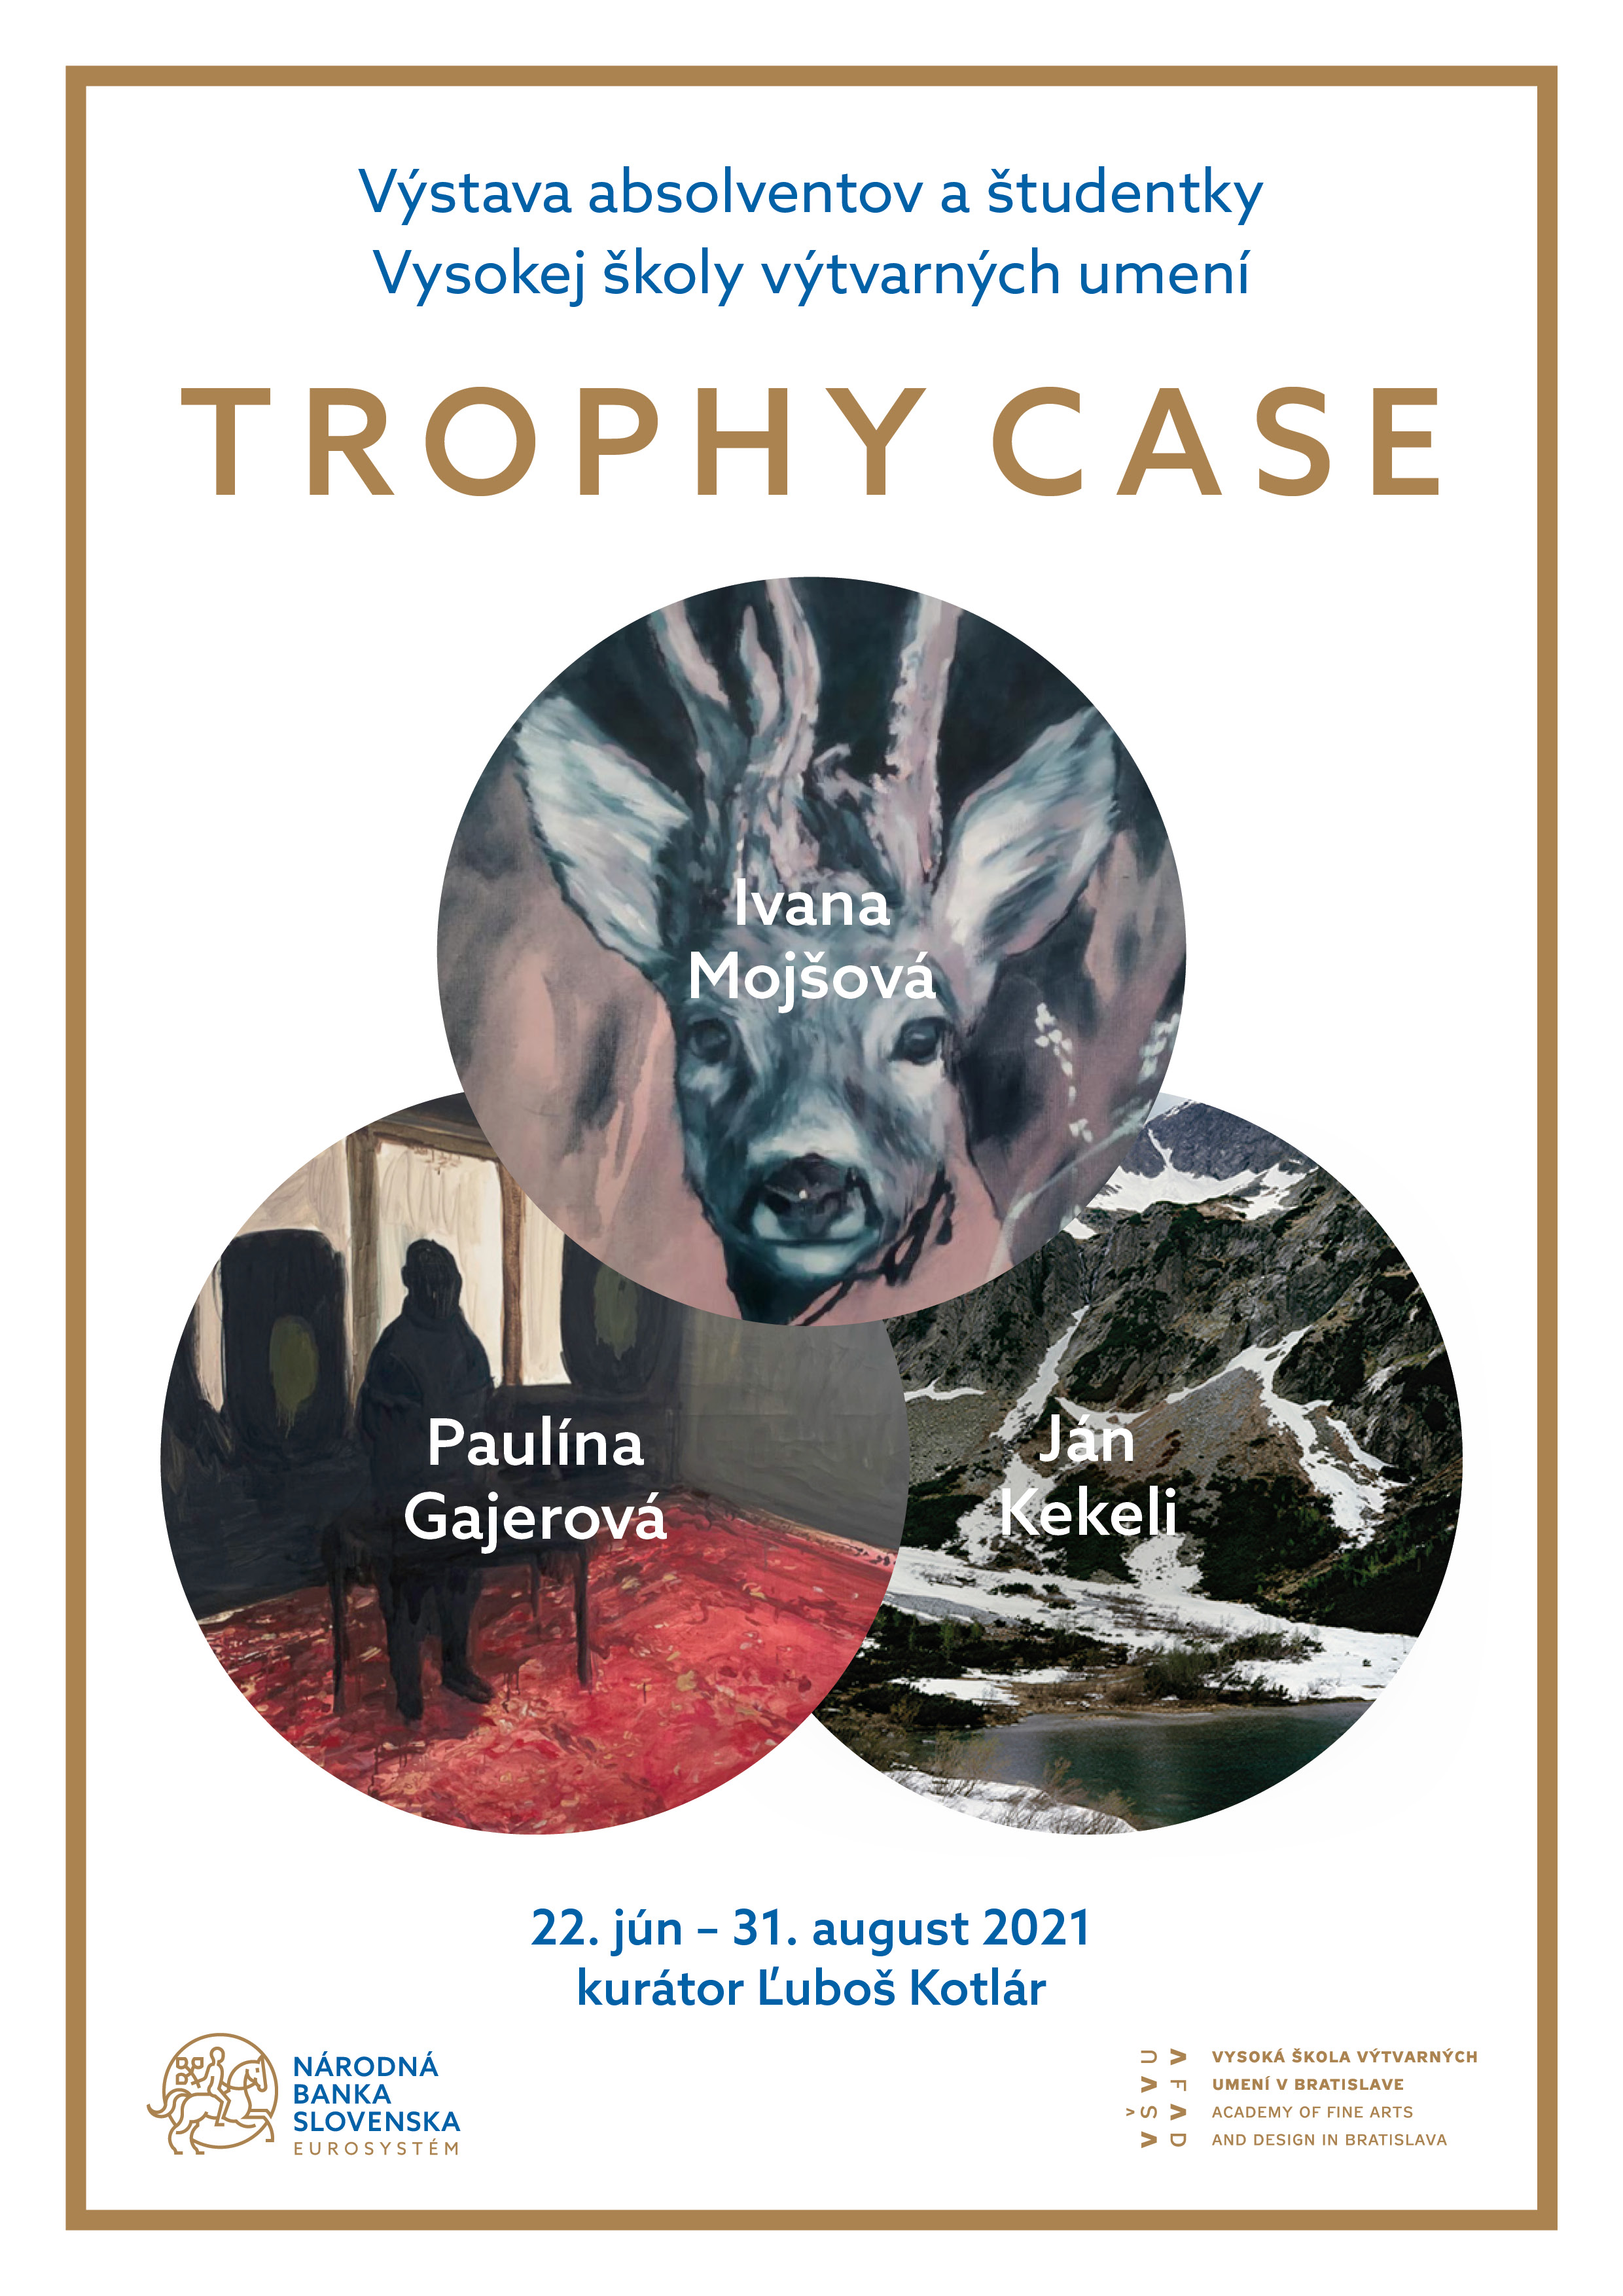 Výstava Trophy Case